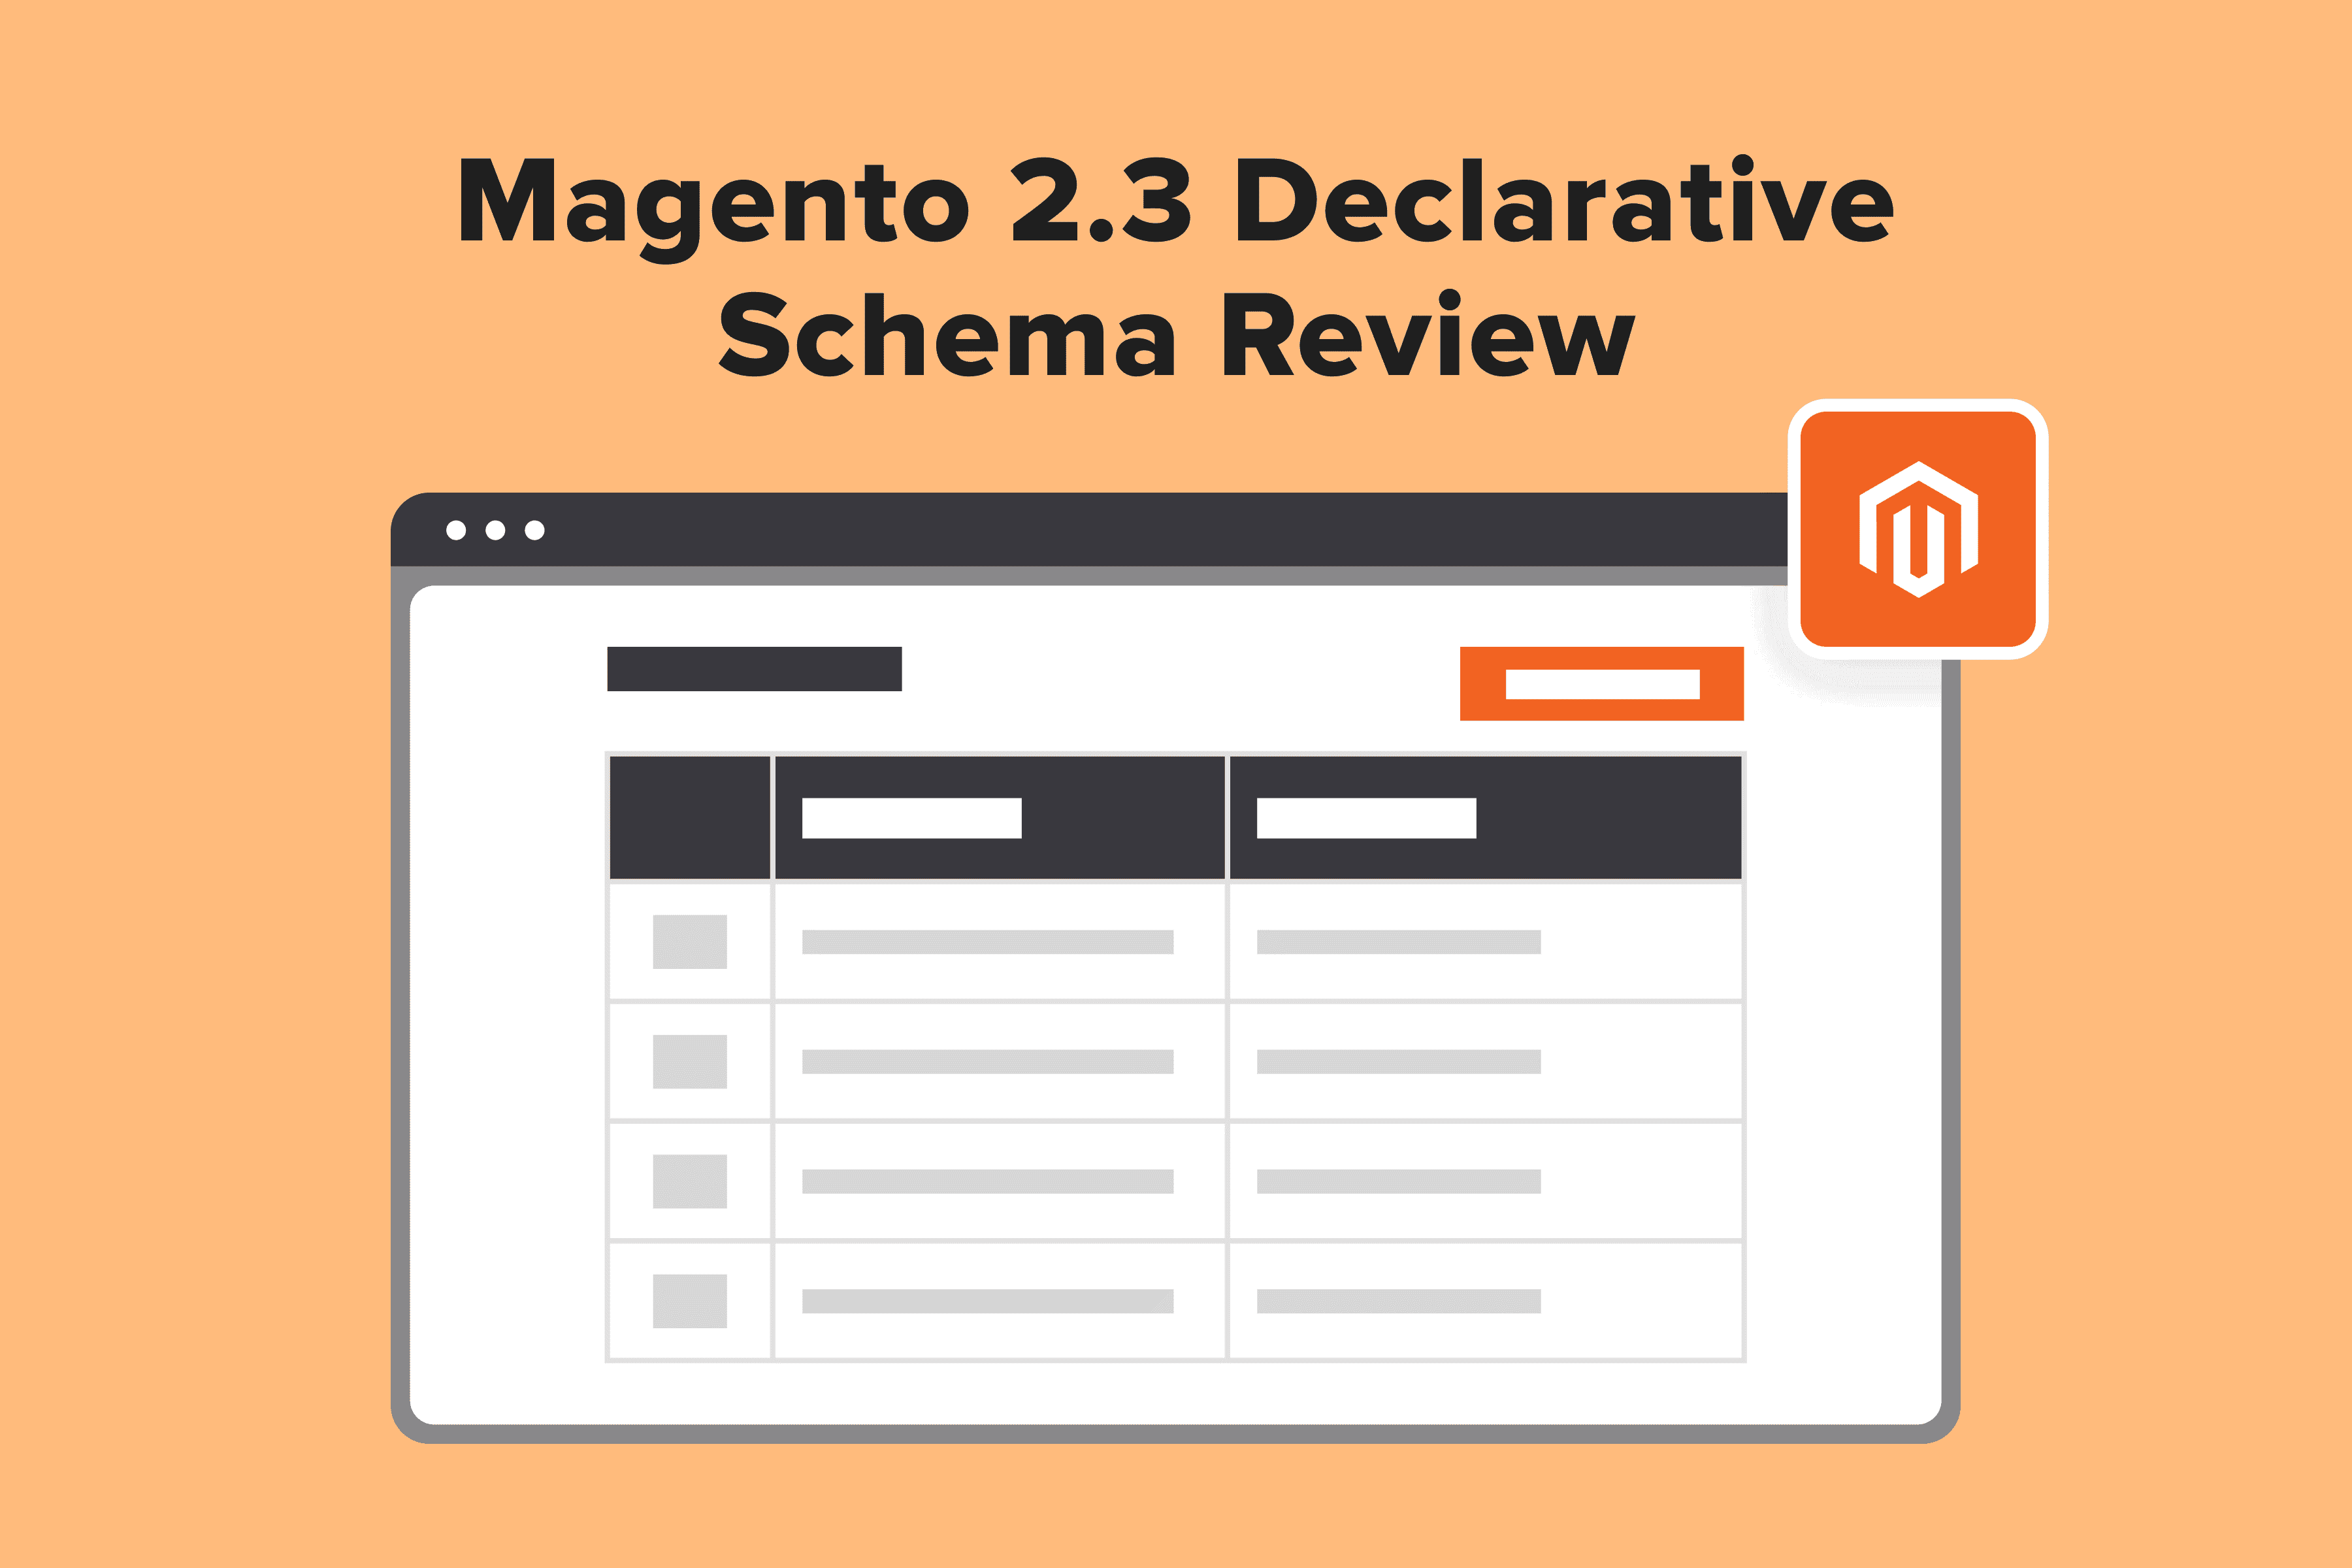 Magento 2.3 Declarative Schema